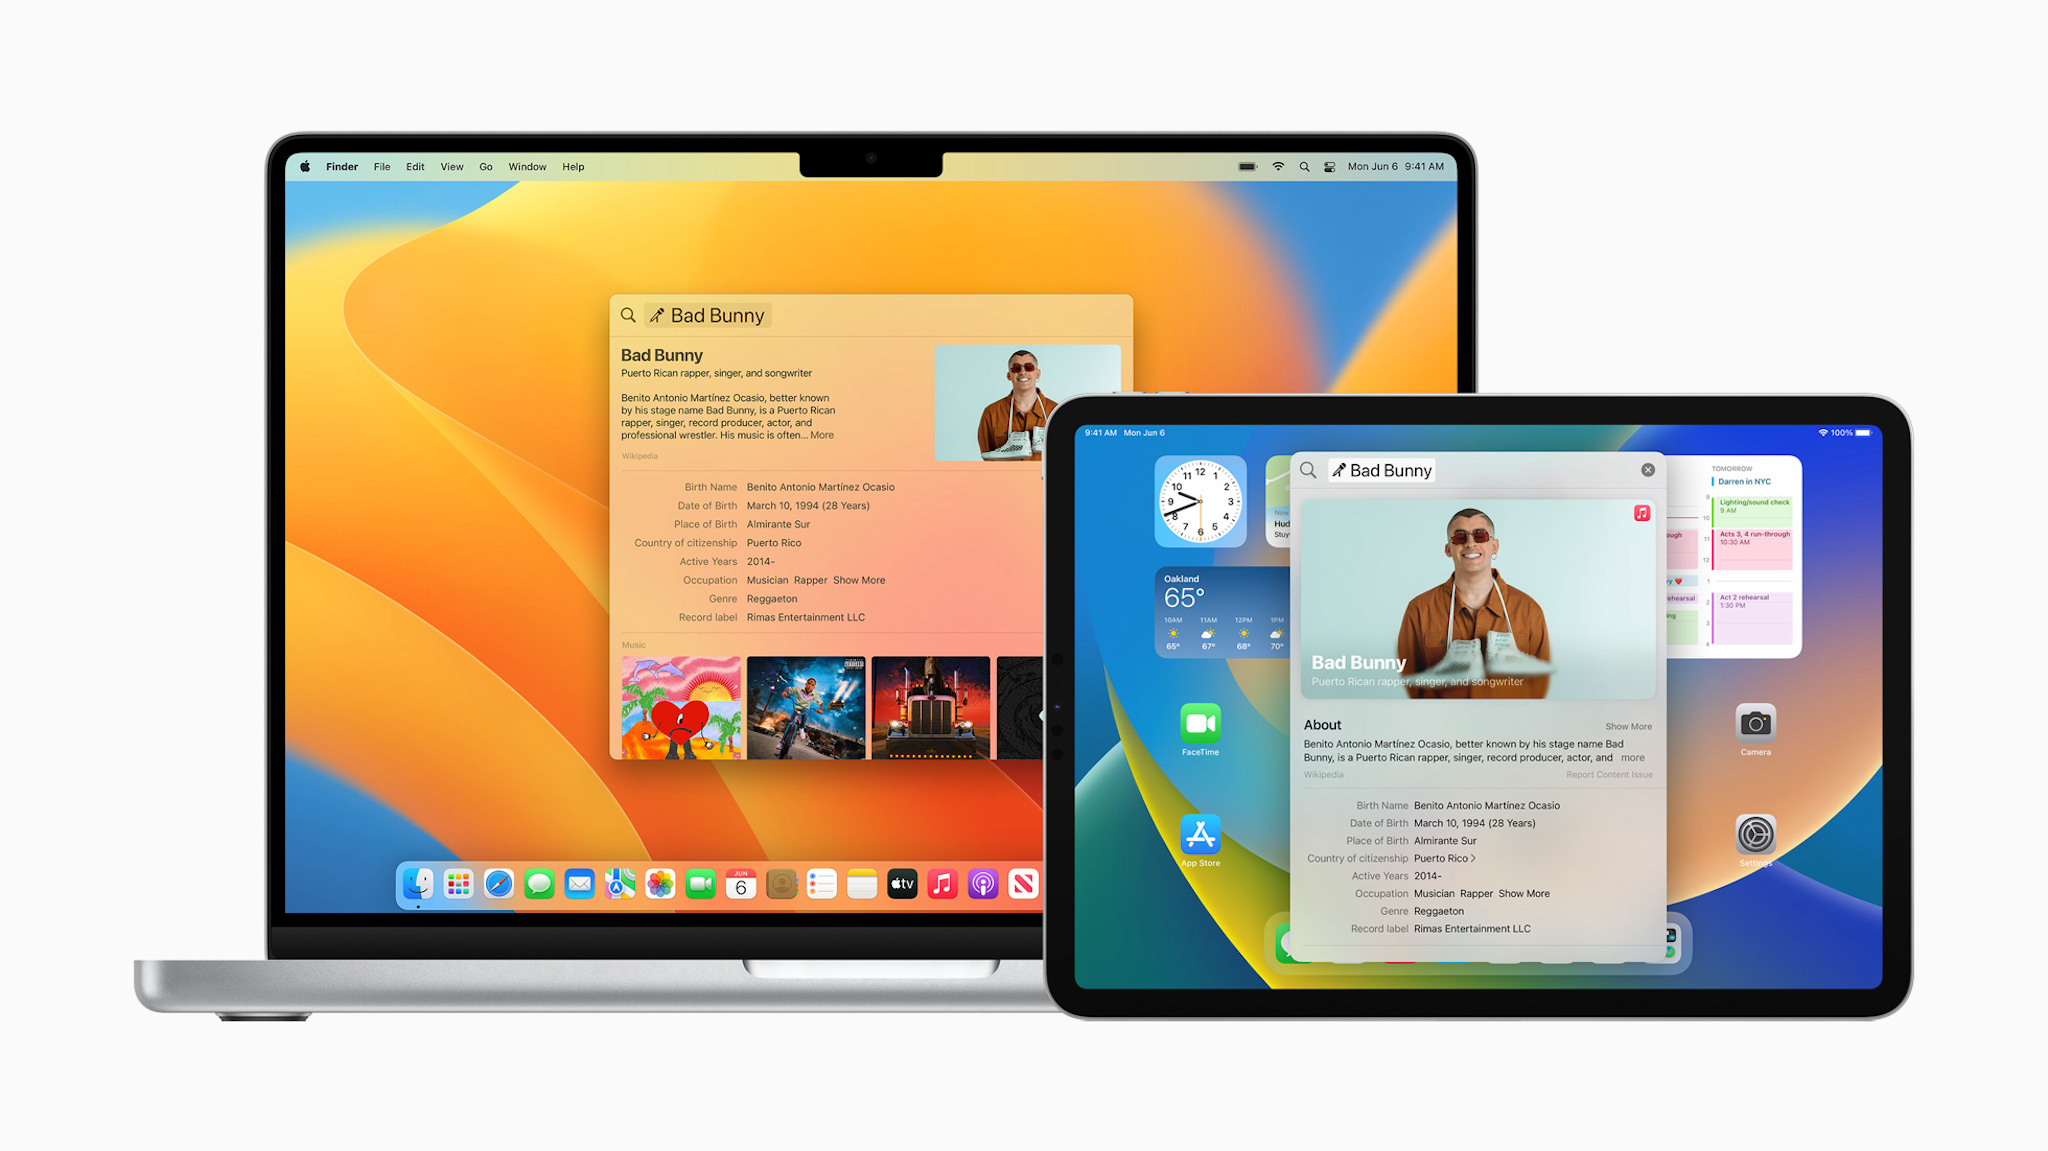 Apple-WWDC22-macOS-Ventura-Spotlight-rich-results-2up-220606.jpg